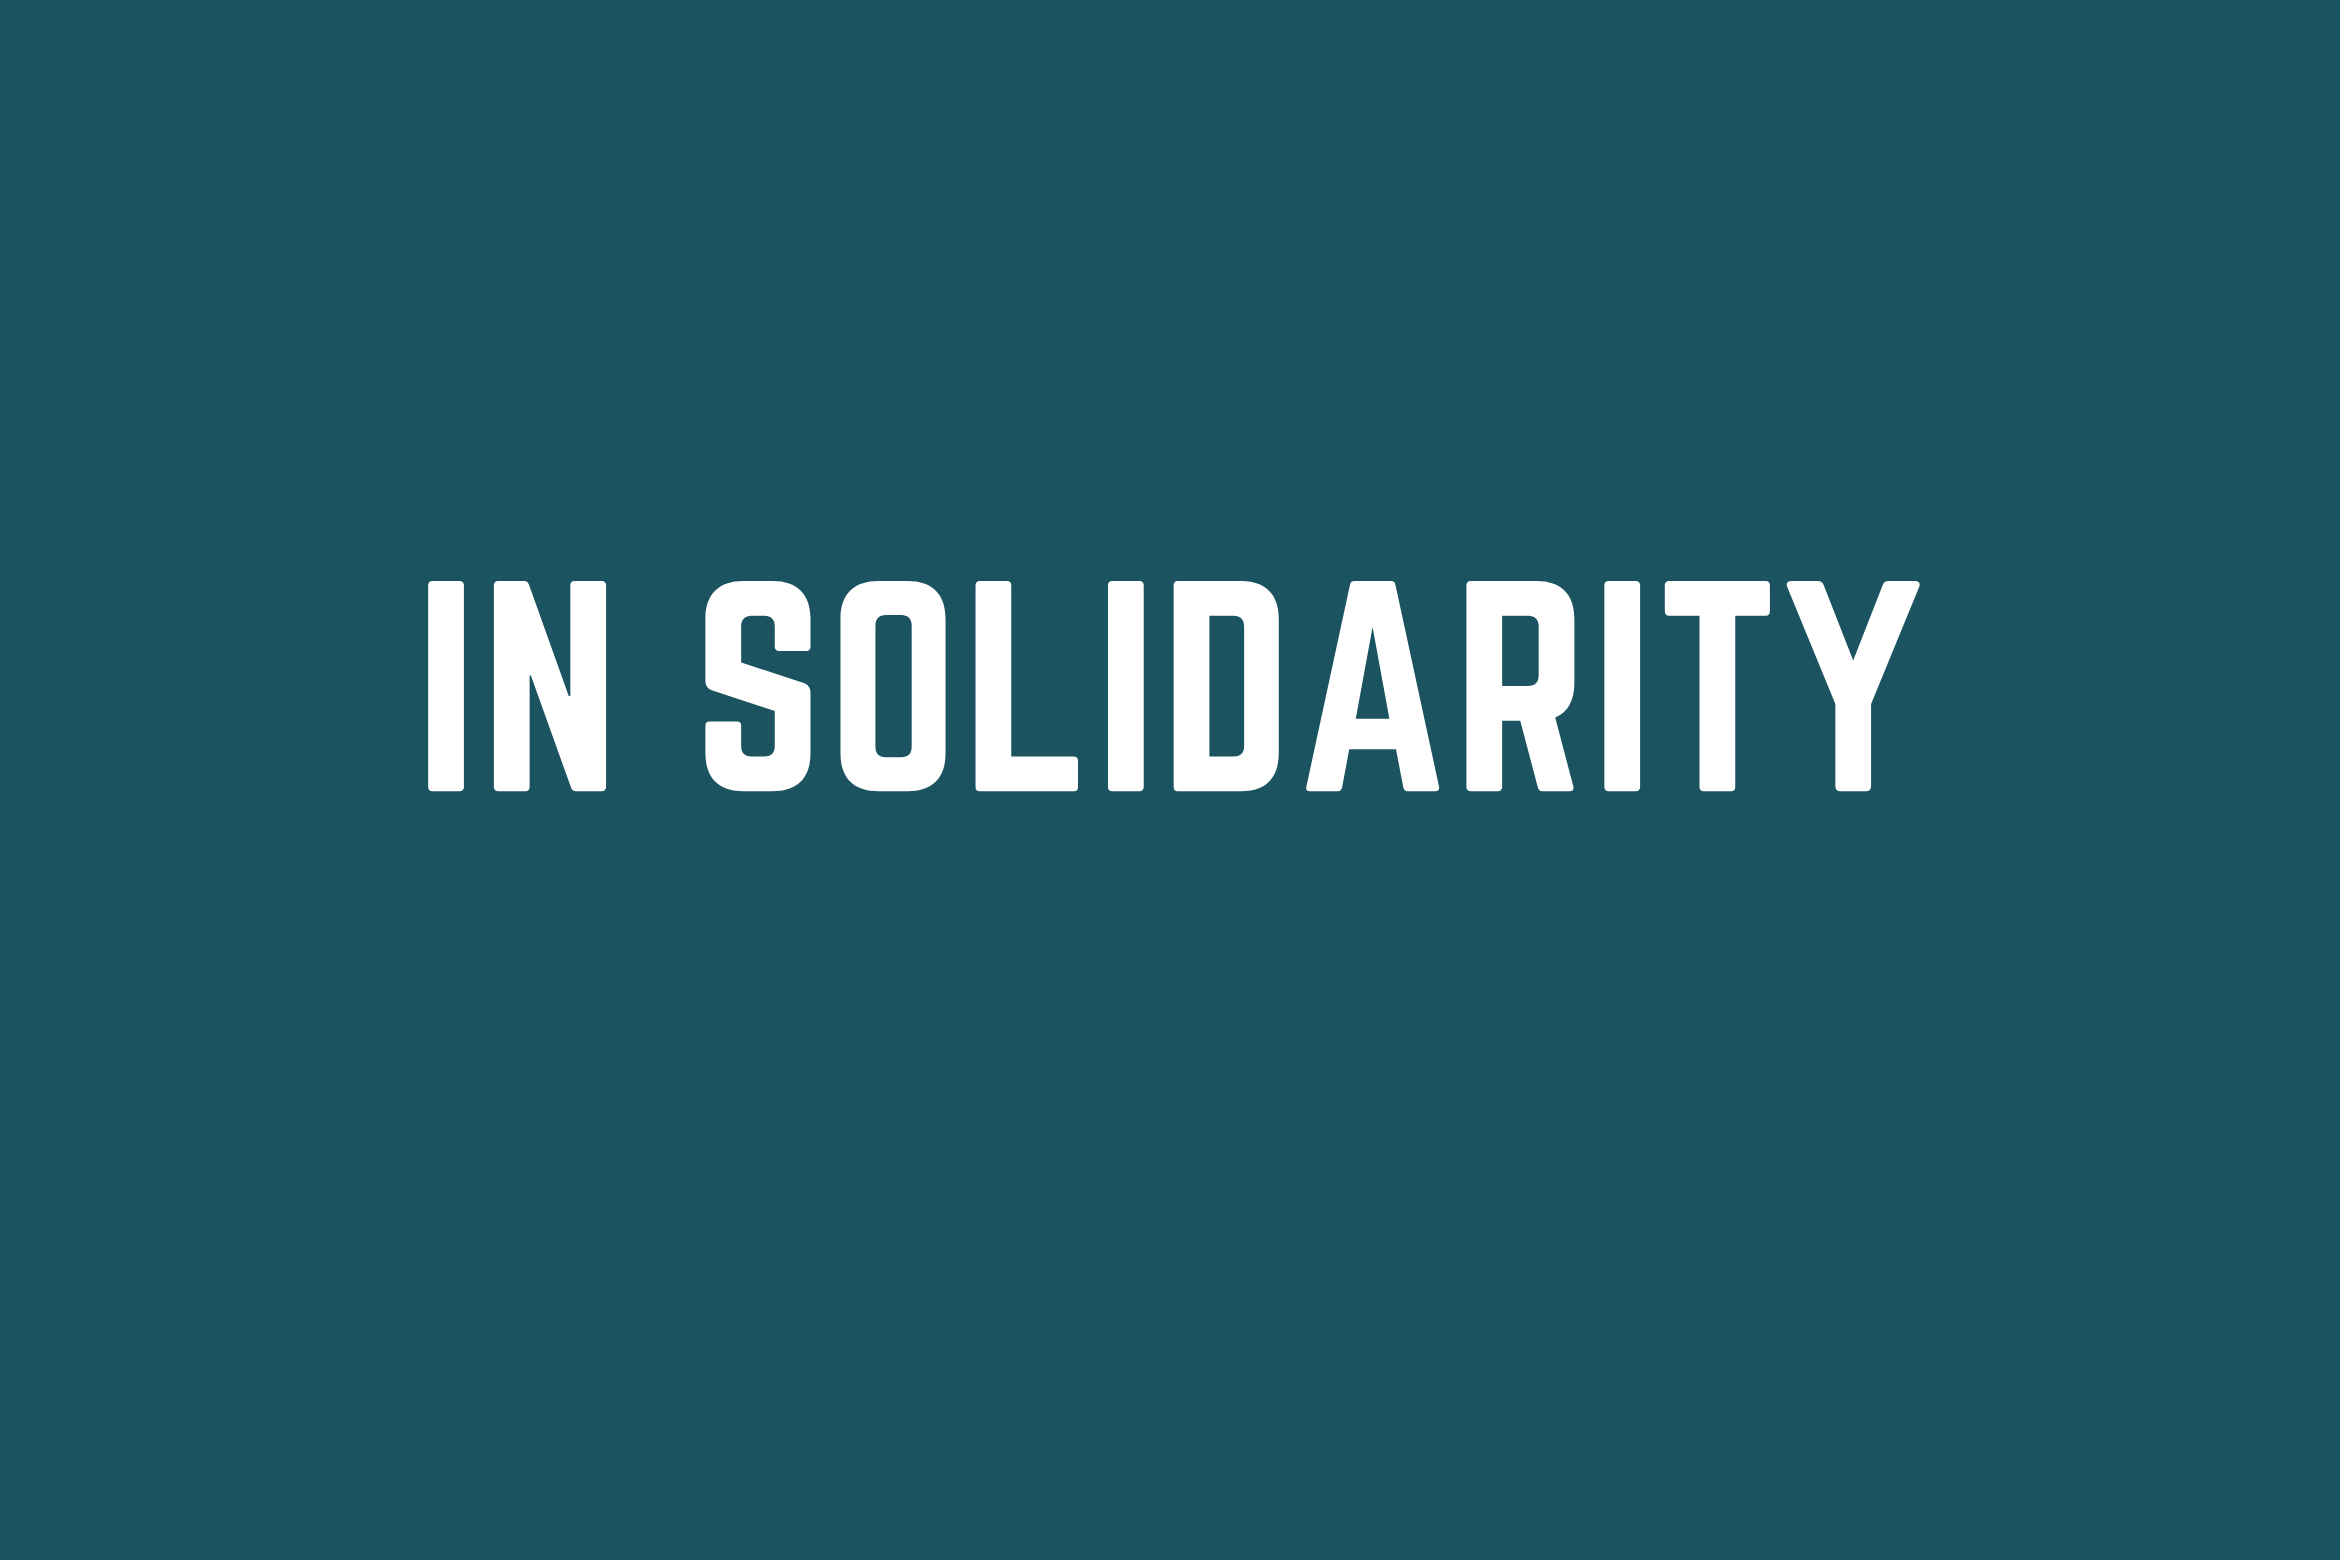 In solidarity